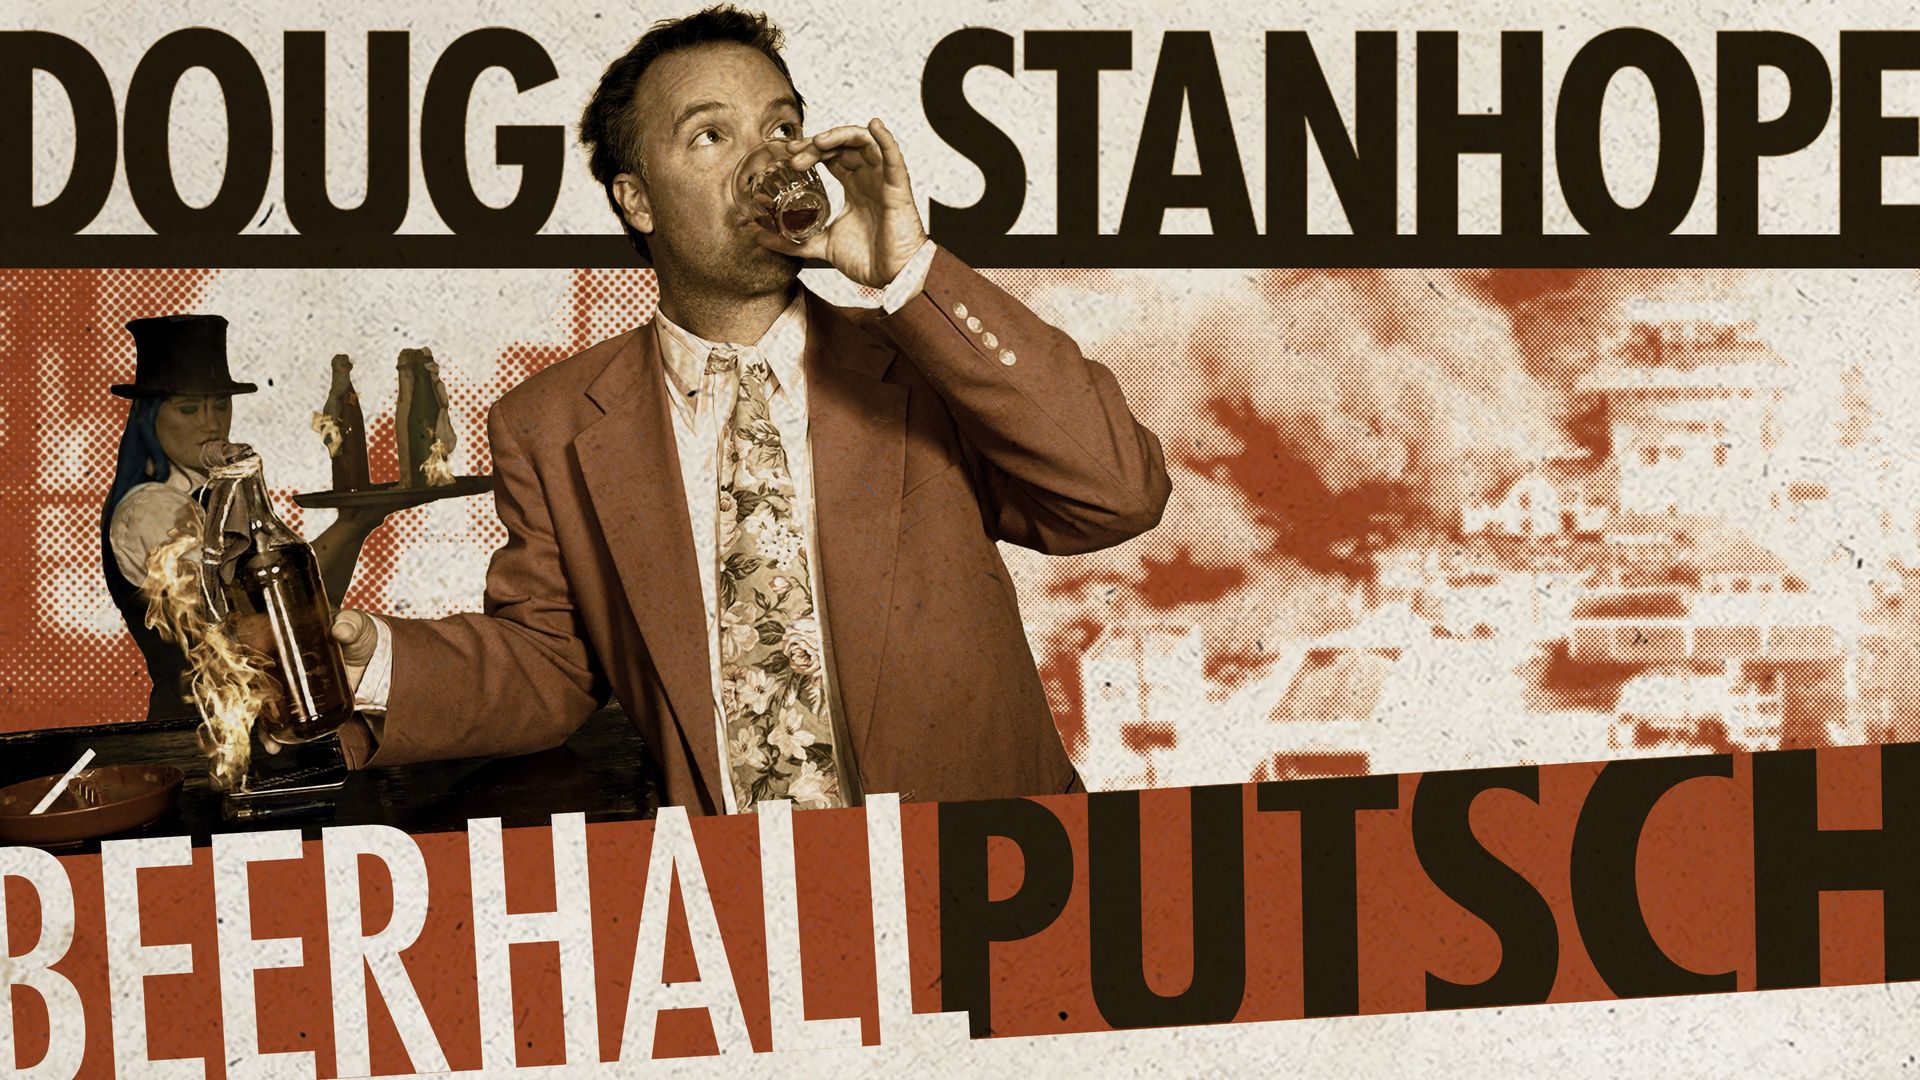 Doug Stanhope: Beer Hall Putsch Backdrop